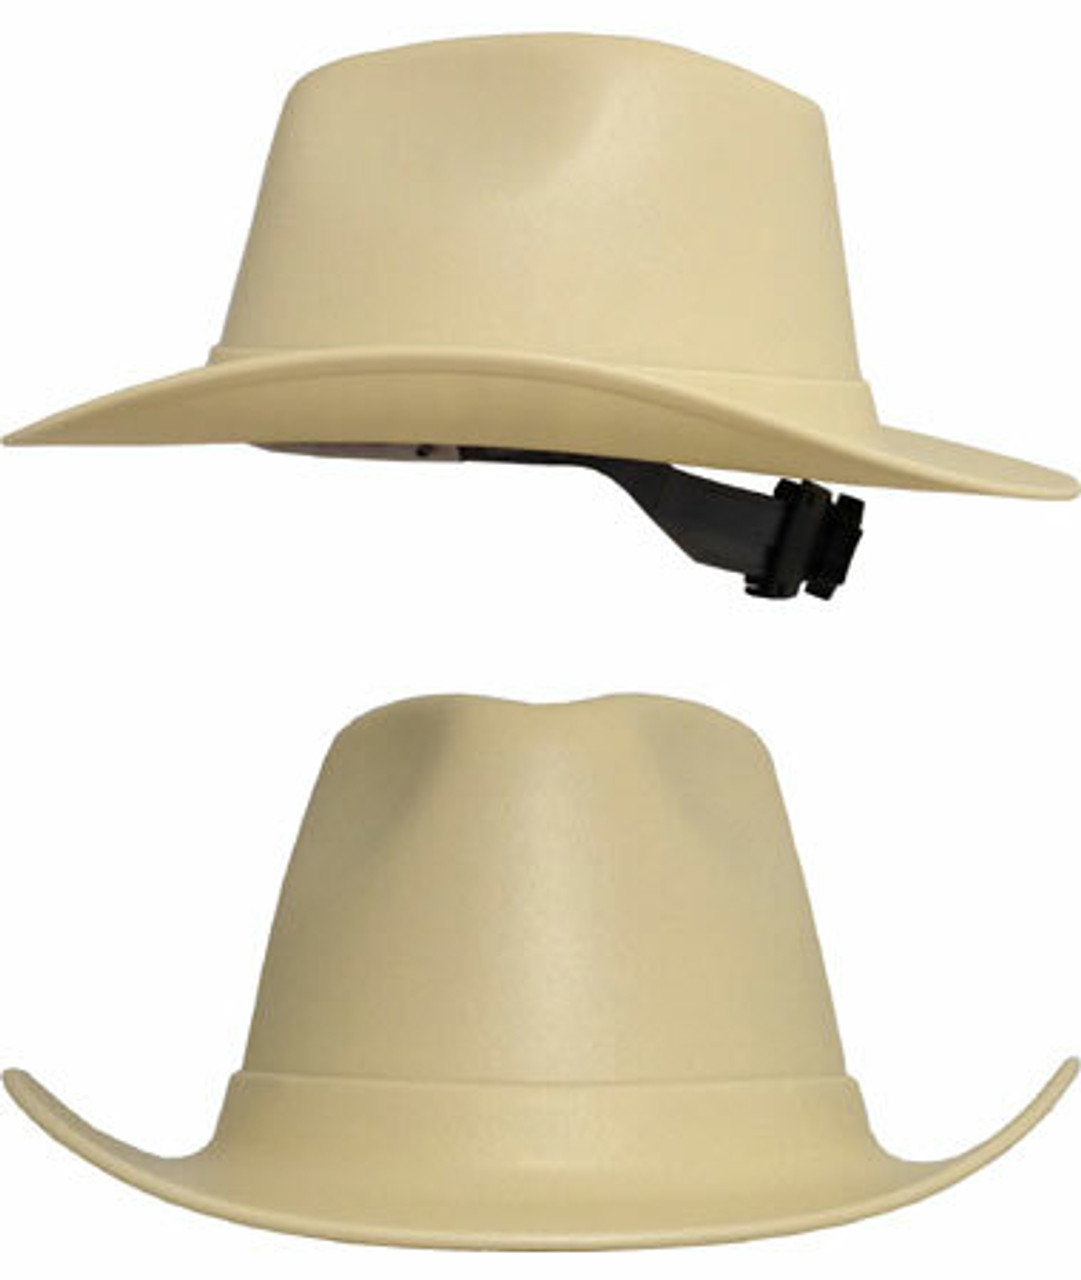 cowboy hard hats osha